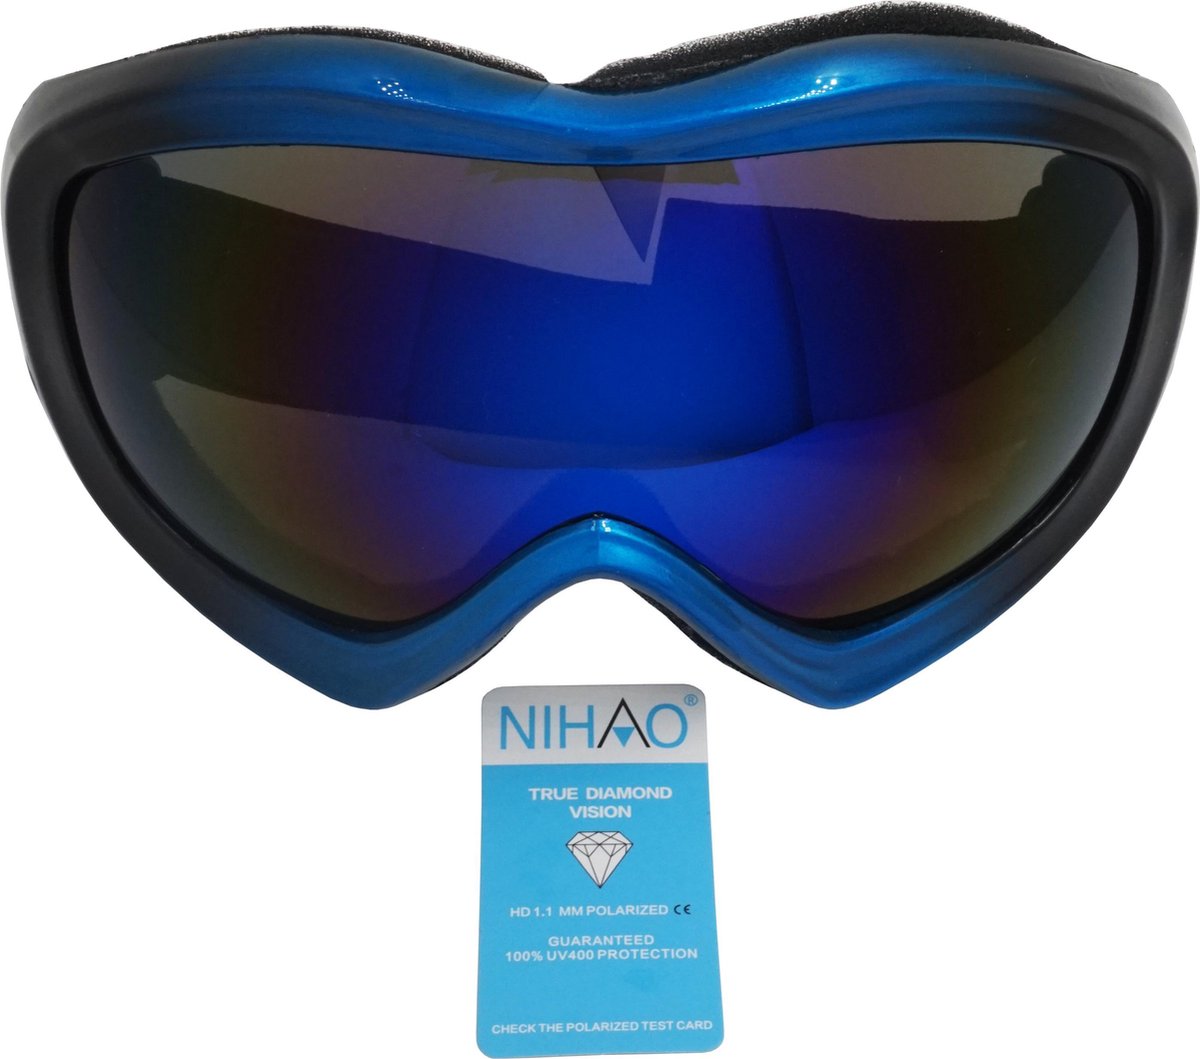 Atlantic donker blauw TPU Ski en Snowboard bril met een 100% UVA UVB bescherming.